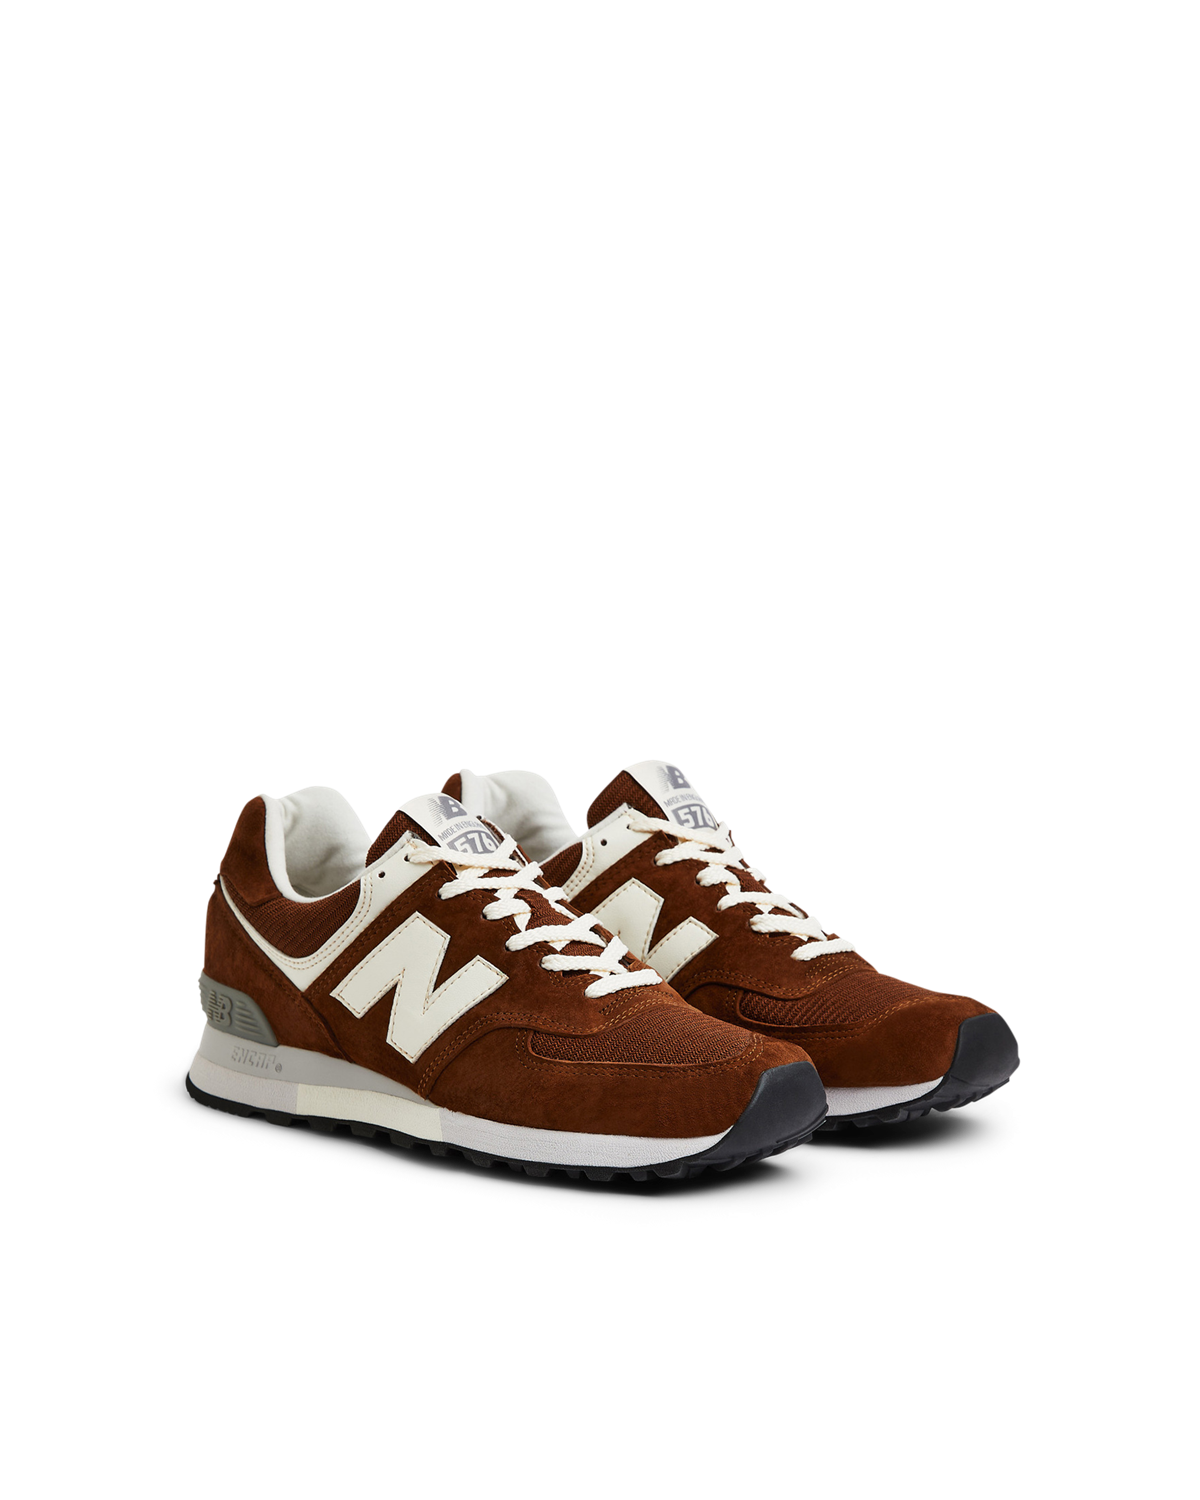 OU576BRN $140 New Balance Footwear Sneakers Brown